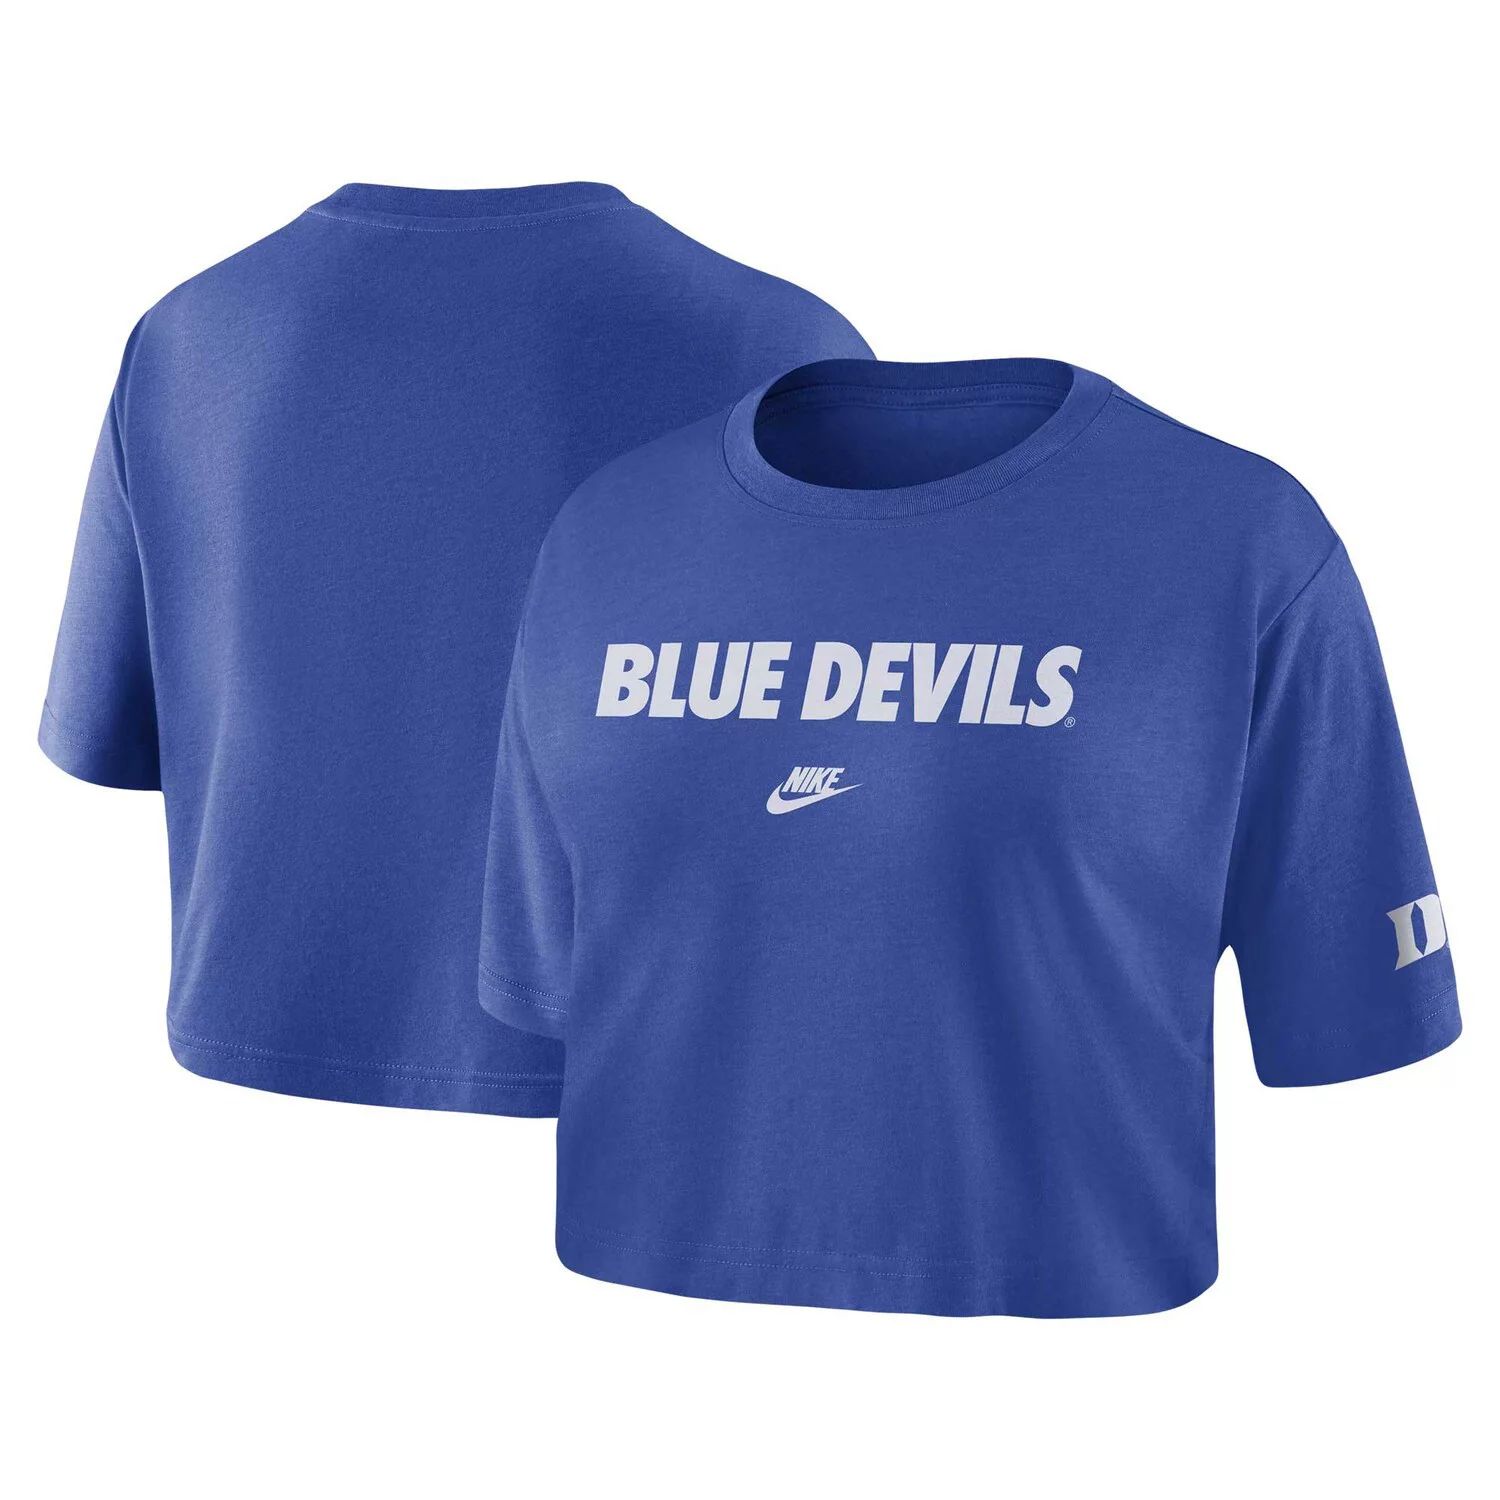 Женская укороченная футболка с надписью Nike Royal Duke Blue Devils Nike